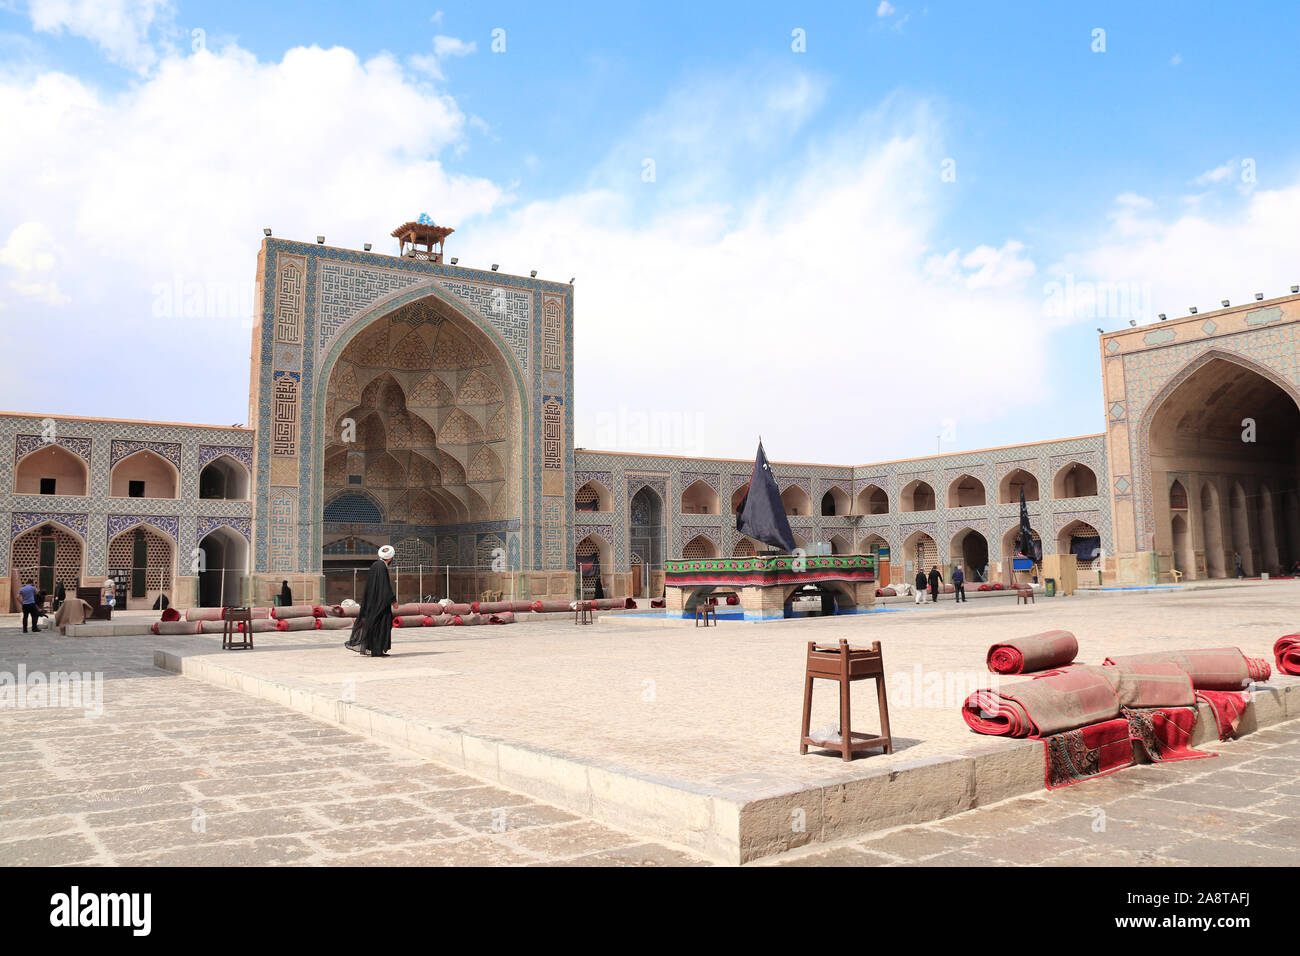 Cour intérieure de la mosquée Jameh e-Masjid (mosquée de Jame, mosquée du vendredi), Isfahan, Iran. Site du patrimoine mondial de l'UNESCO Banque D'Images